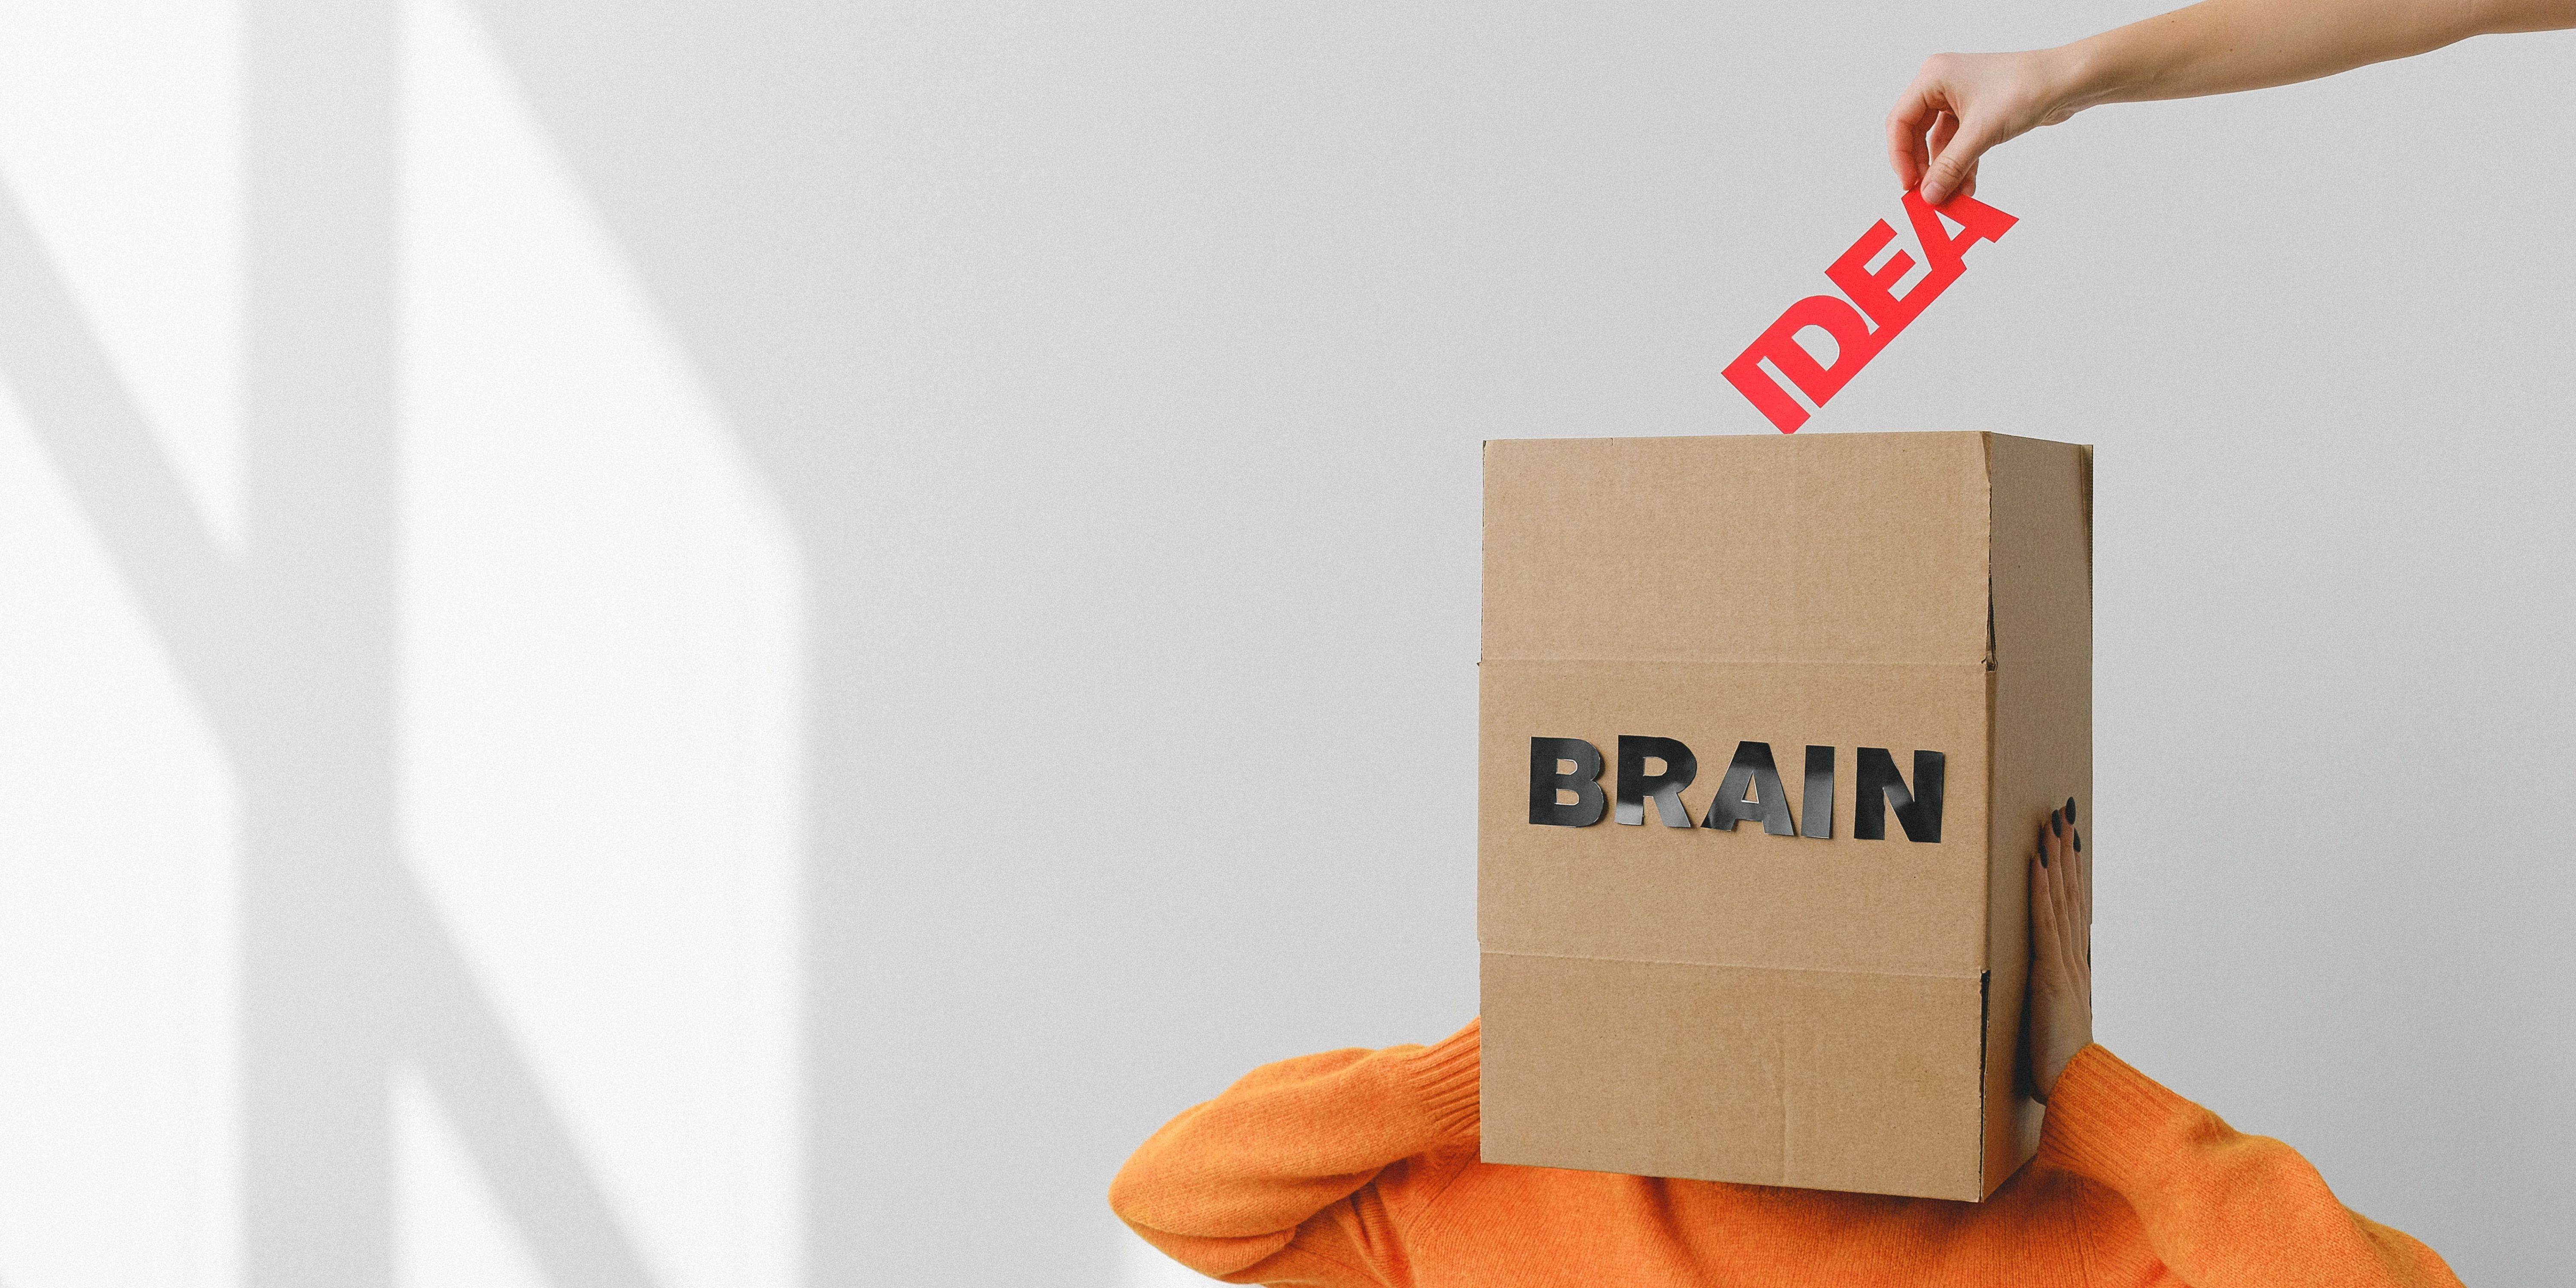 la boîte étiquetée cerveau couvre la tête de la personne tandis qu'une main laisse tomber le mot 